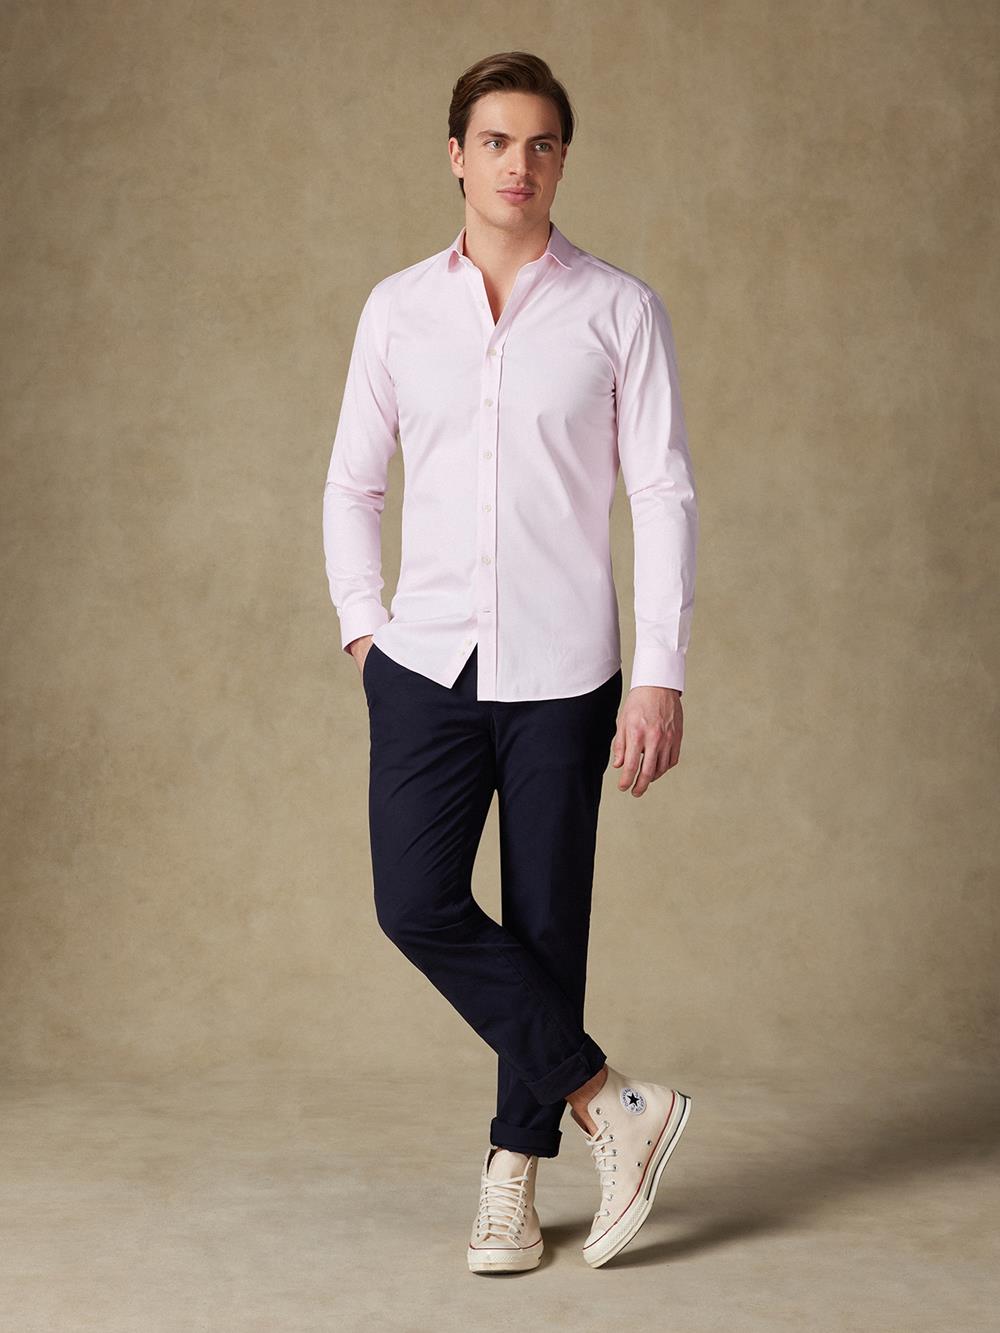 Camisa entallada pin point rosa - Manga Larga